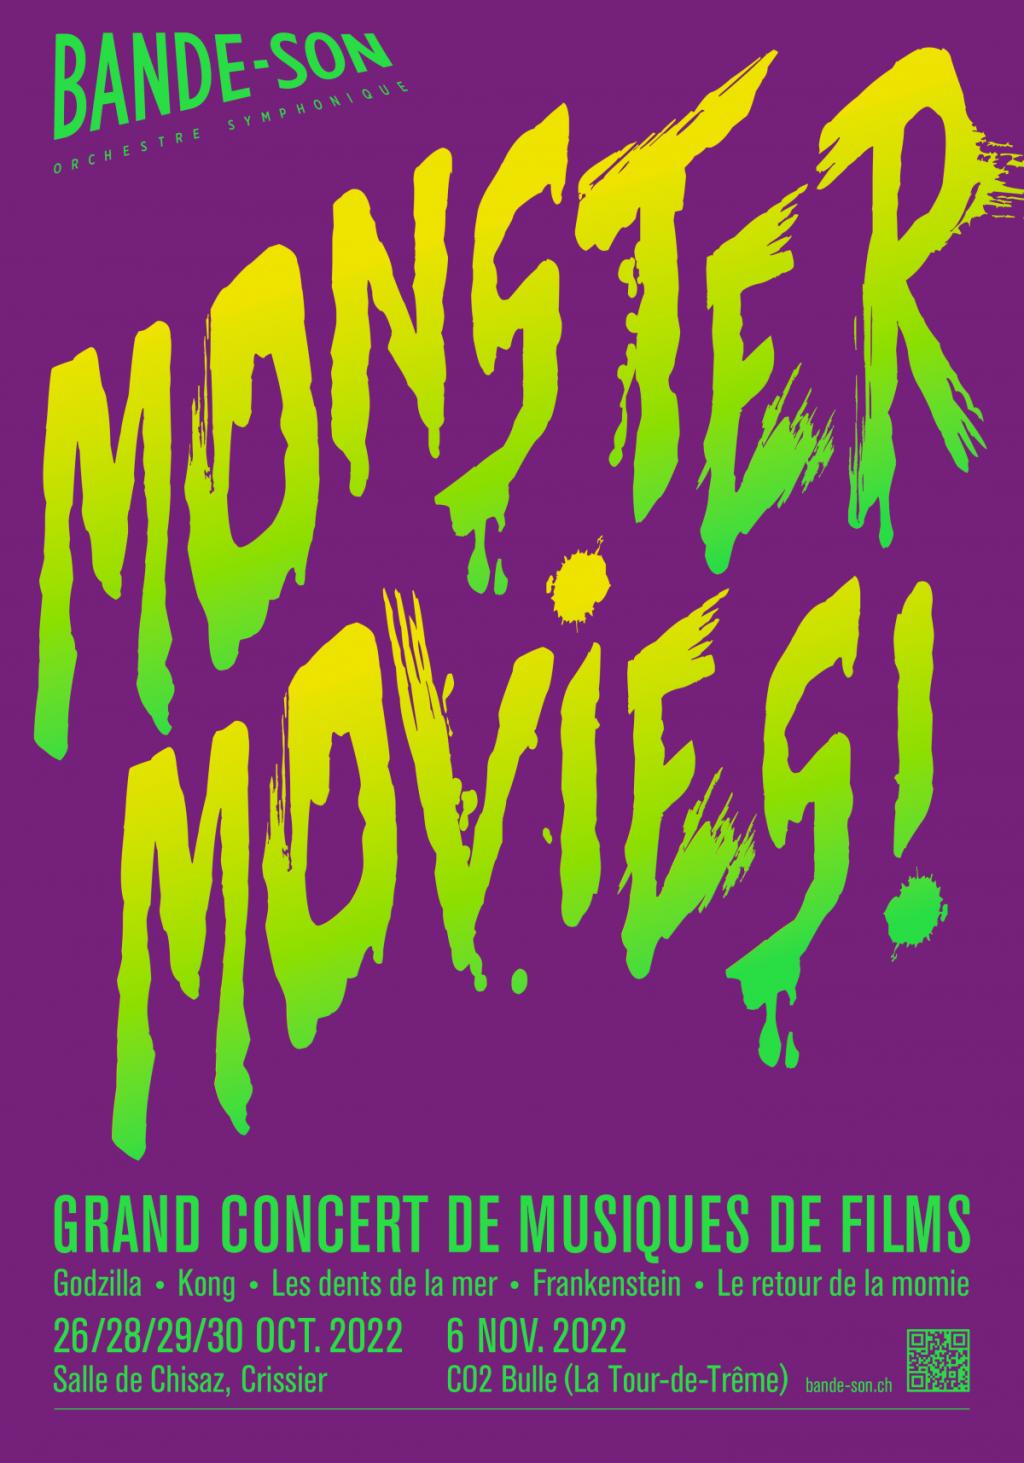 MONSTER MOVIES! Grand concert de musique de films